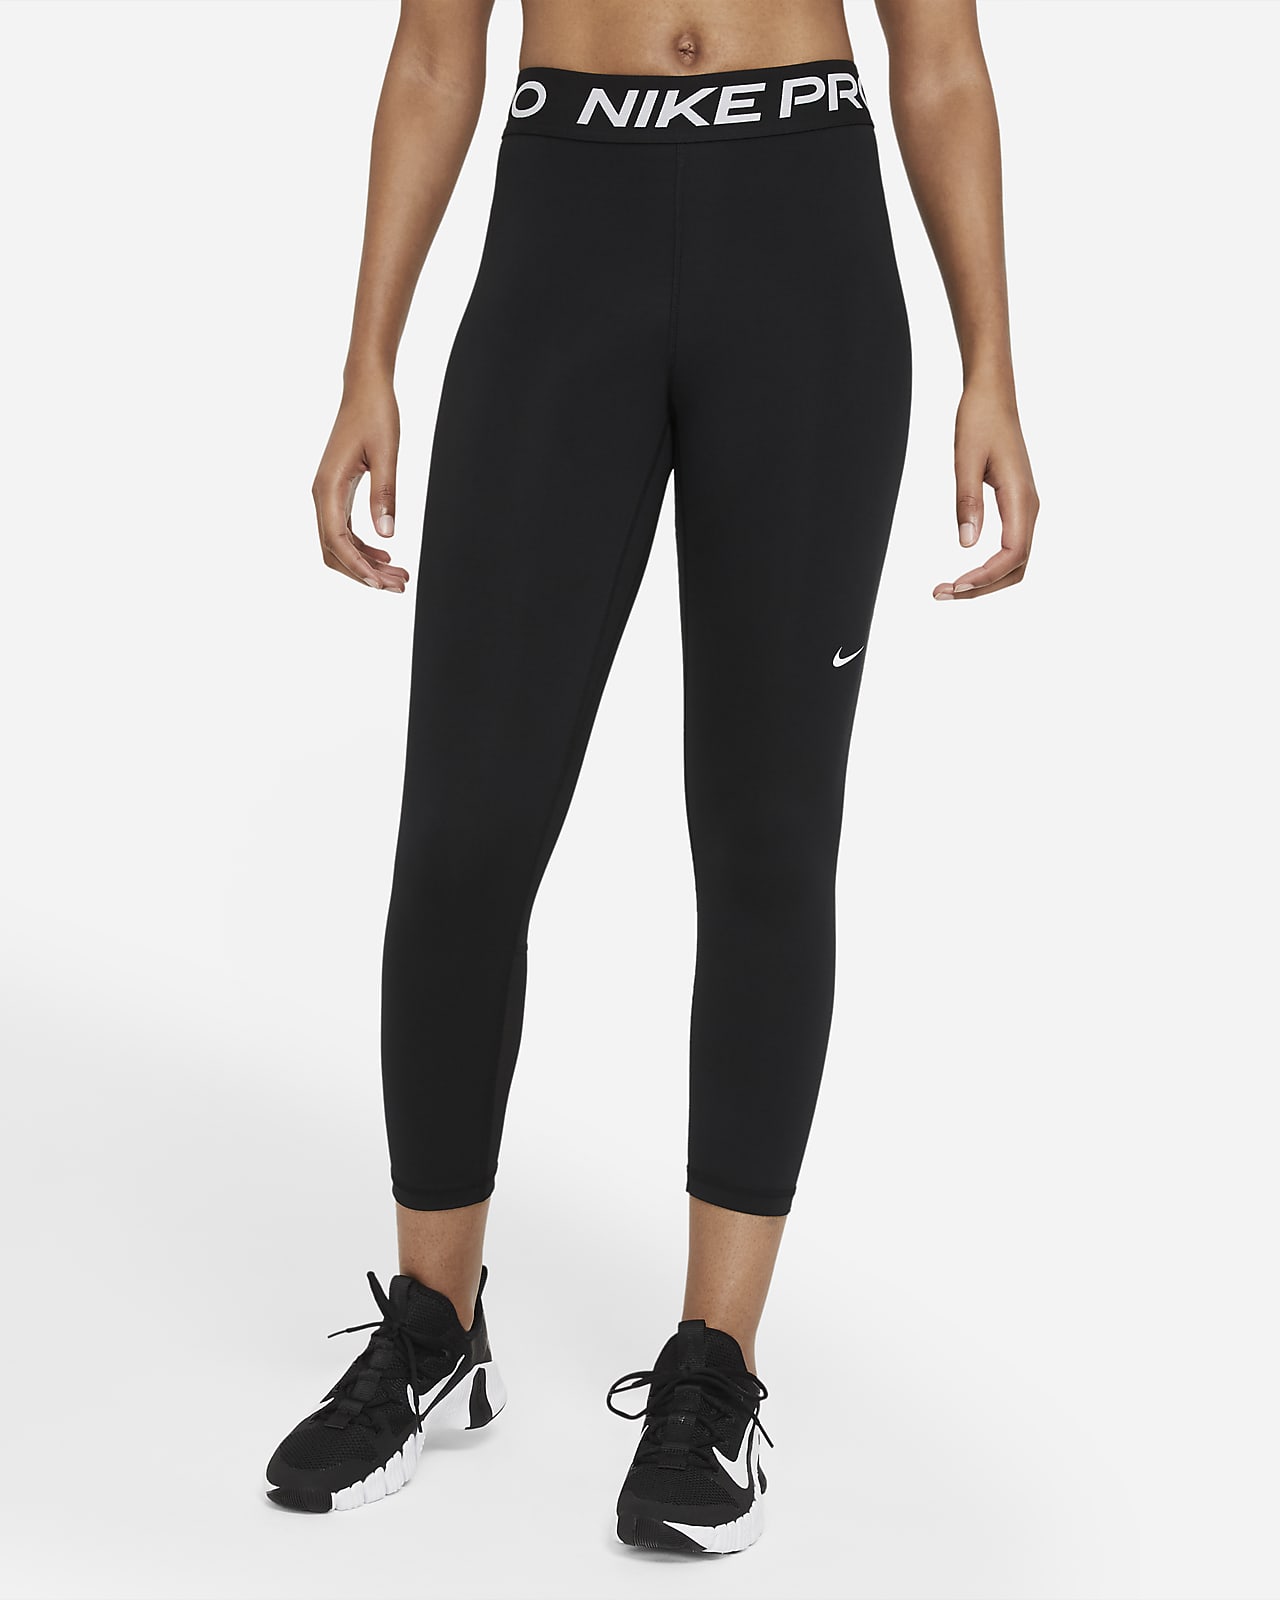 timmerman Elektropositief Ga wandelen Nike Pro 365 Women's Mid-Rise Crop Leggings. Nike JP